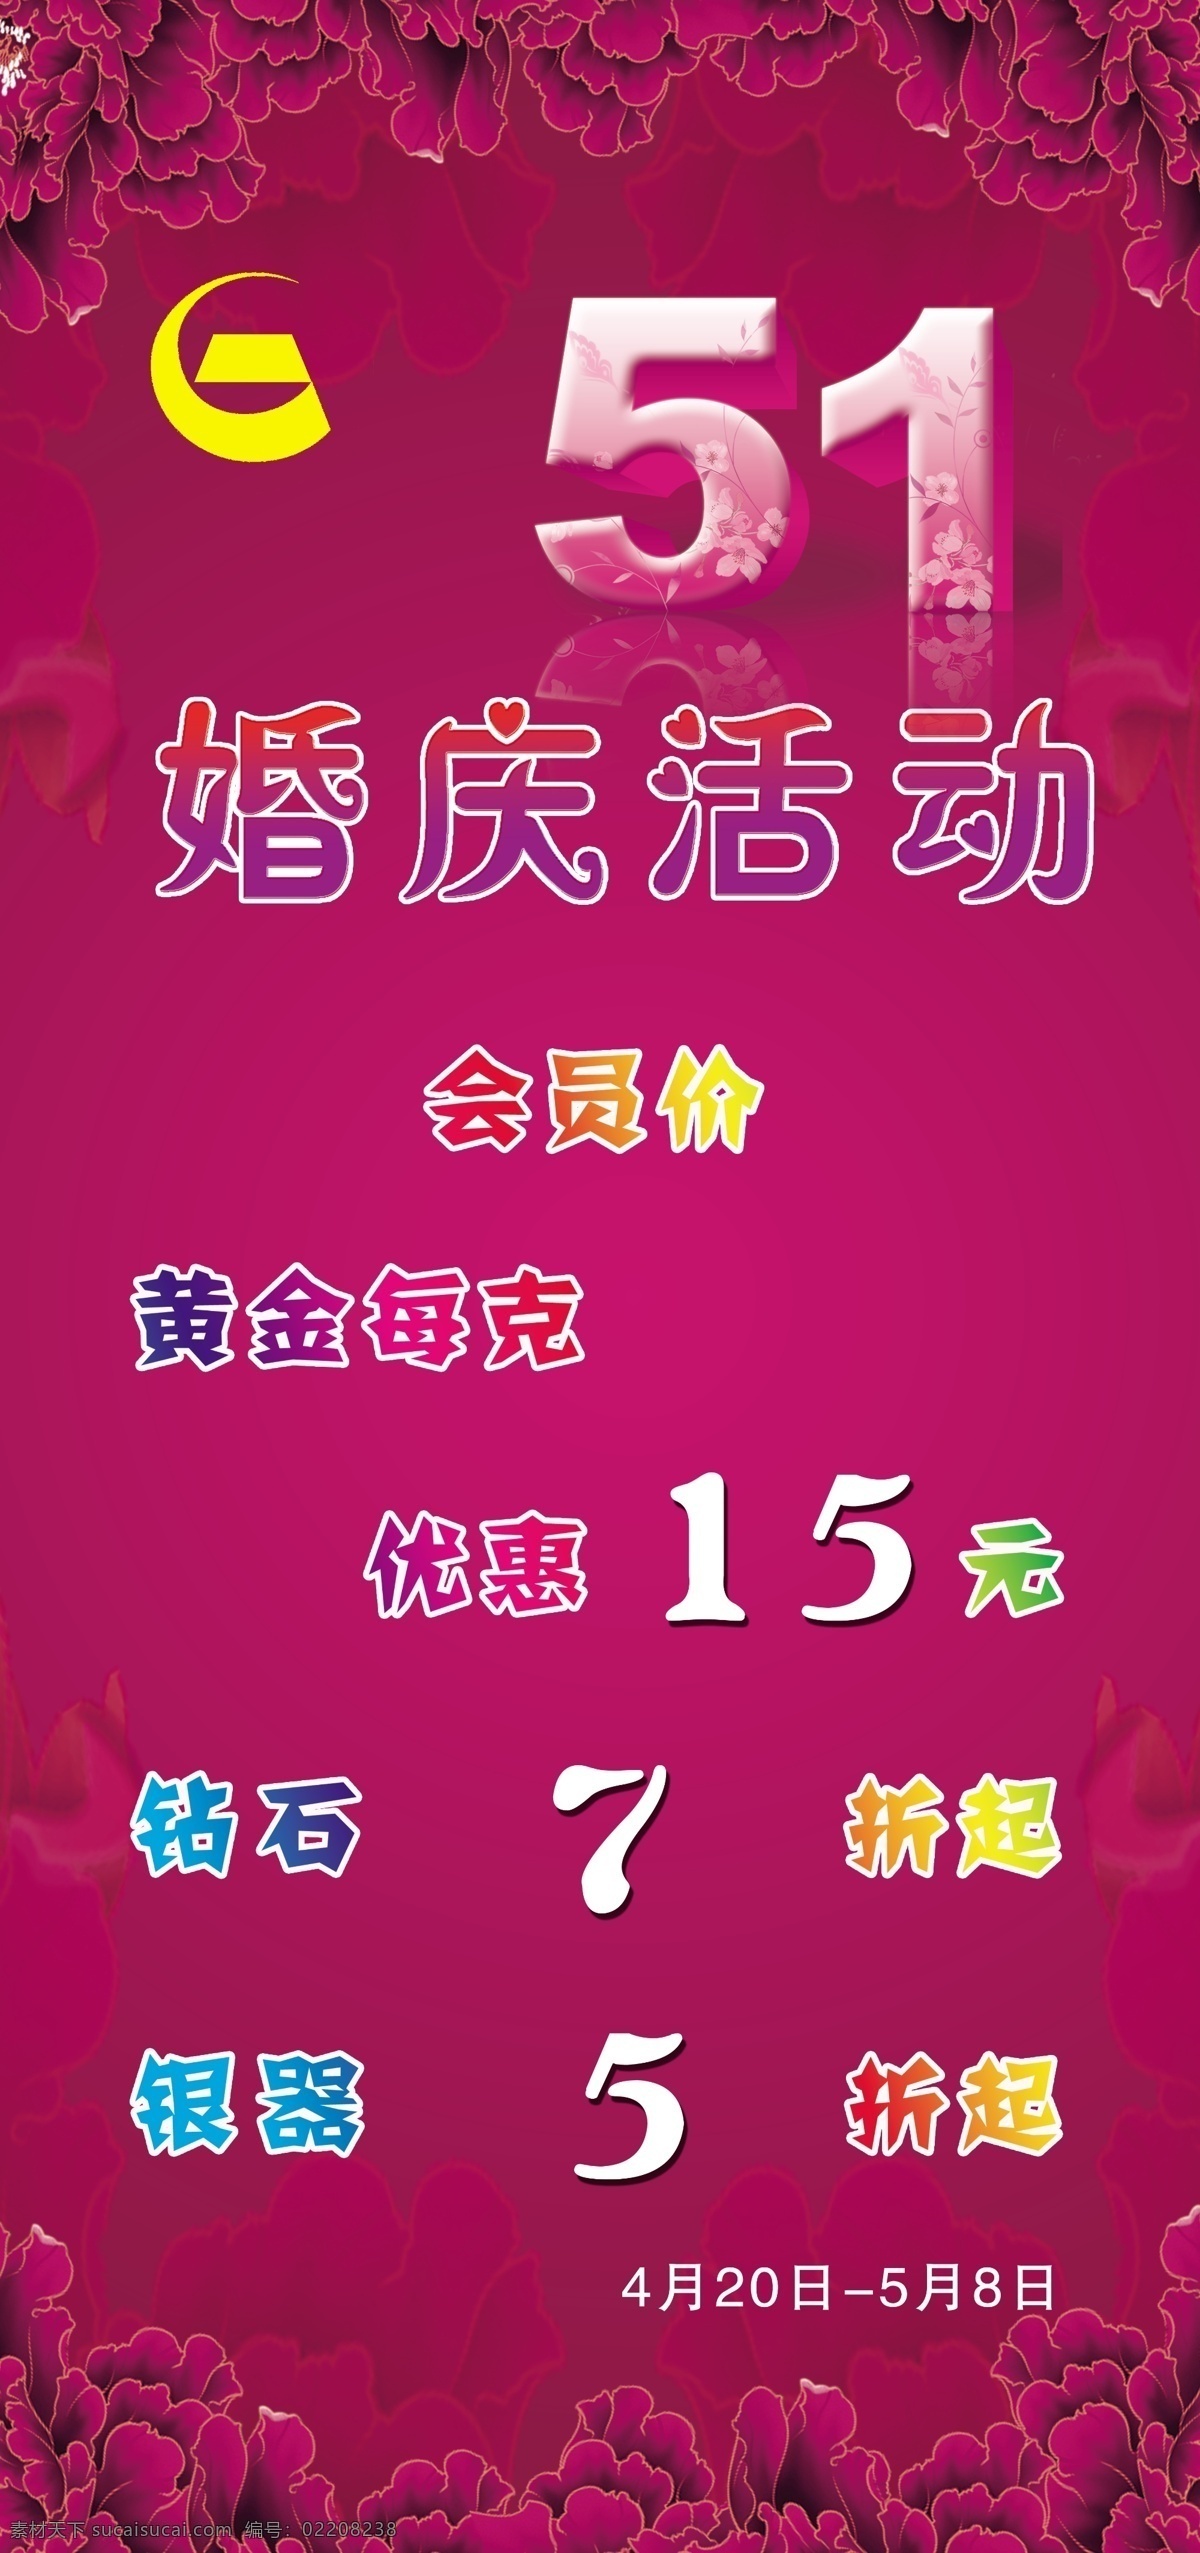 五 活动 海报 广告设计模板 花纹 活动背景 五一活动 五一活动海报 源文件 中国黄金 紫色背景 海报背景图